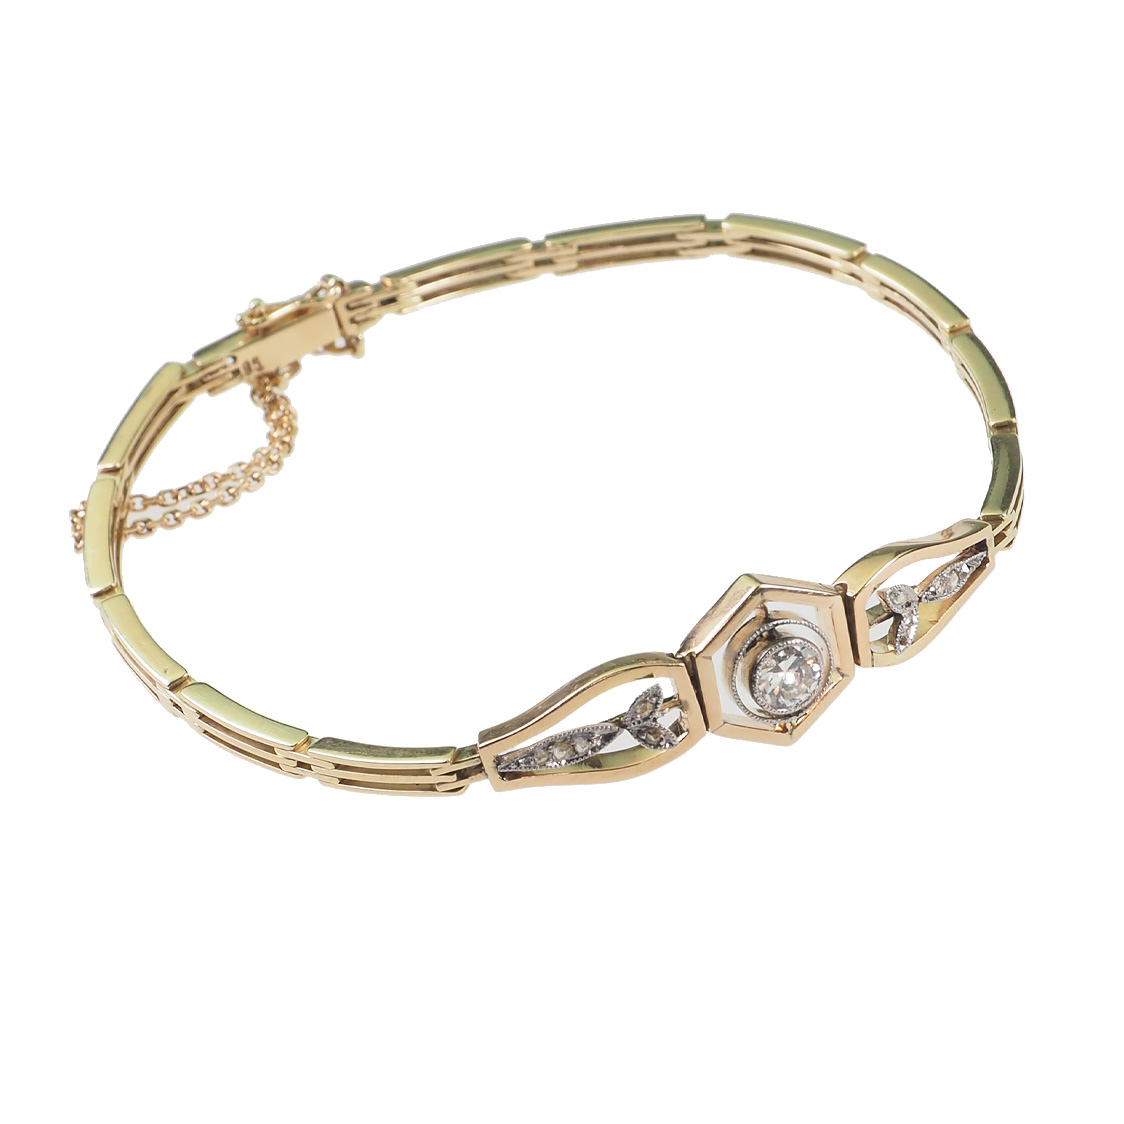 Groothandel OEM / ODM-juweliersware OEM-armbande en -armbande in 925 sterling silwer vervaardiger